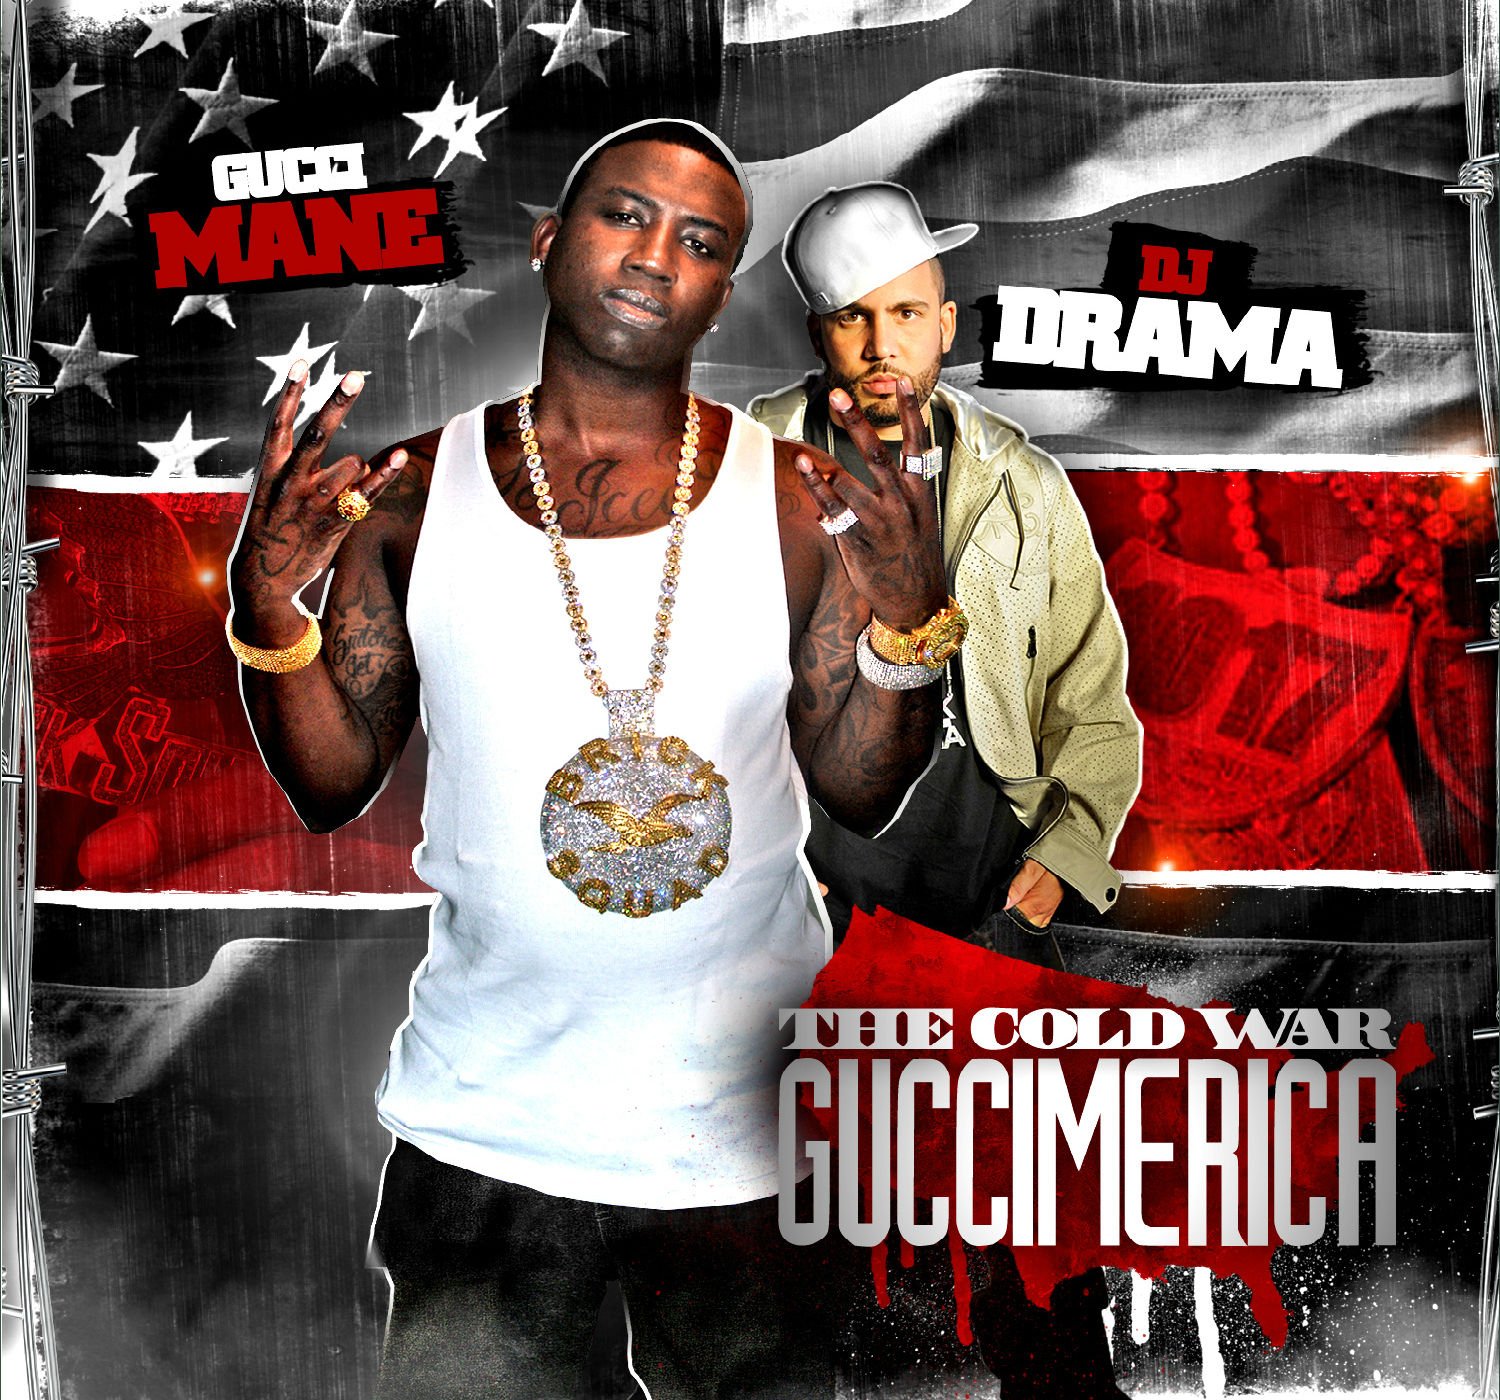 Gucci Mane Southern Gangsta Rap Rapper Hip Hop Drama Poster Wallpaper